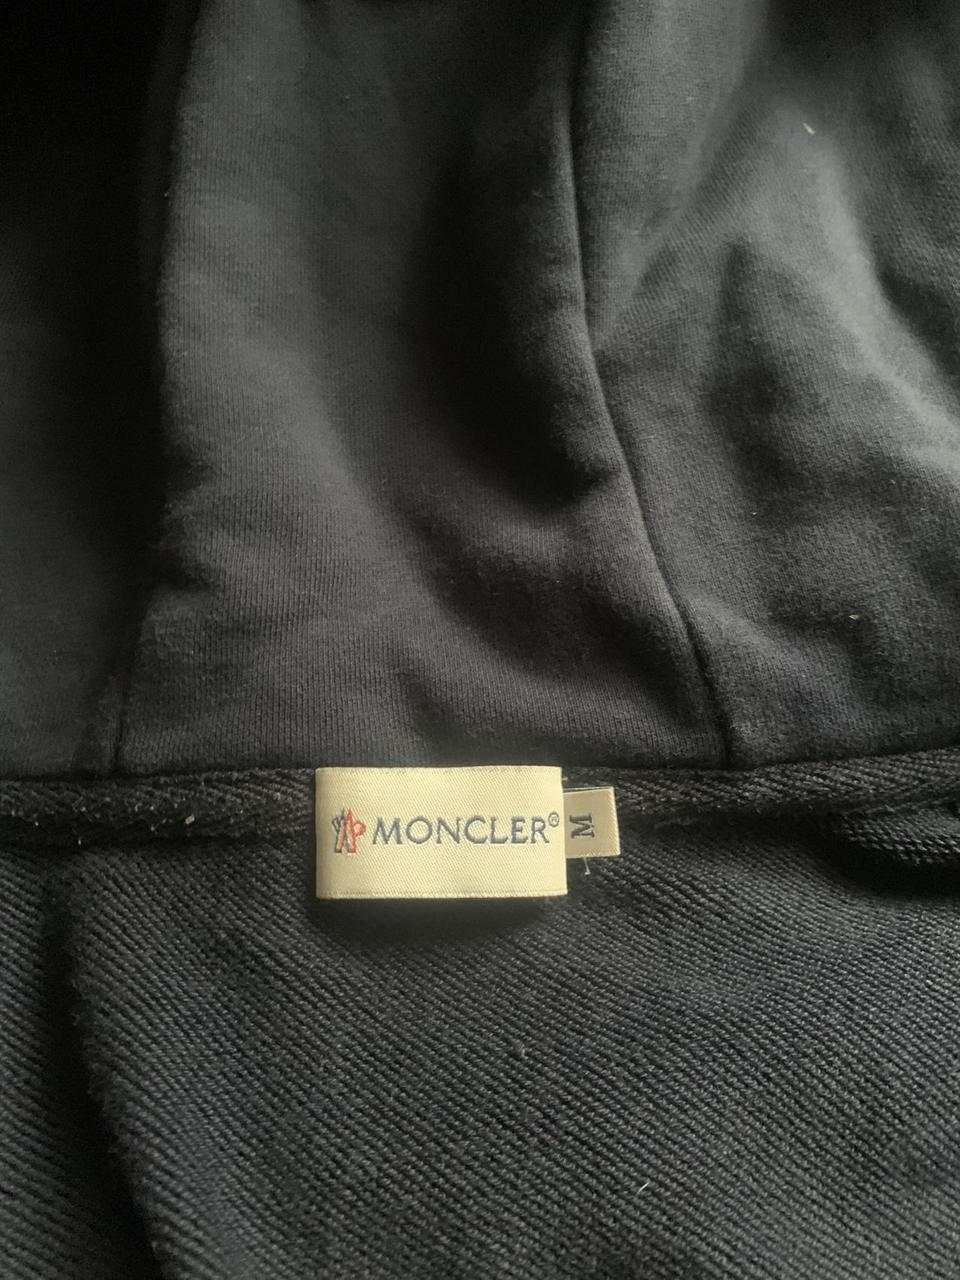 Moncler Medium hoodie labels. @maxdonnison - Depop